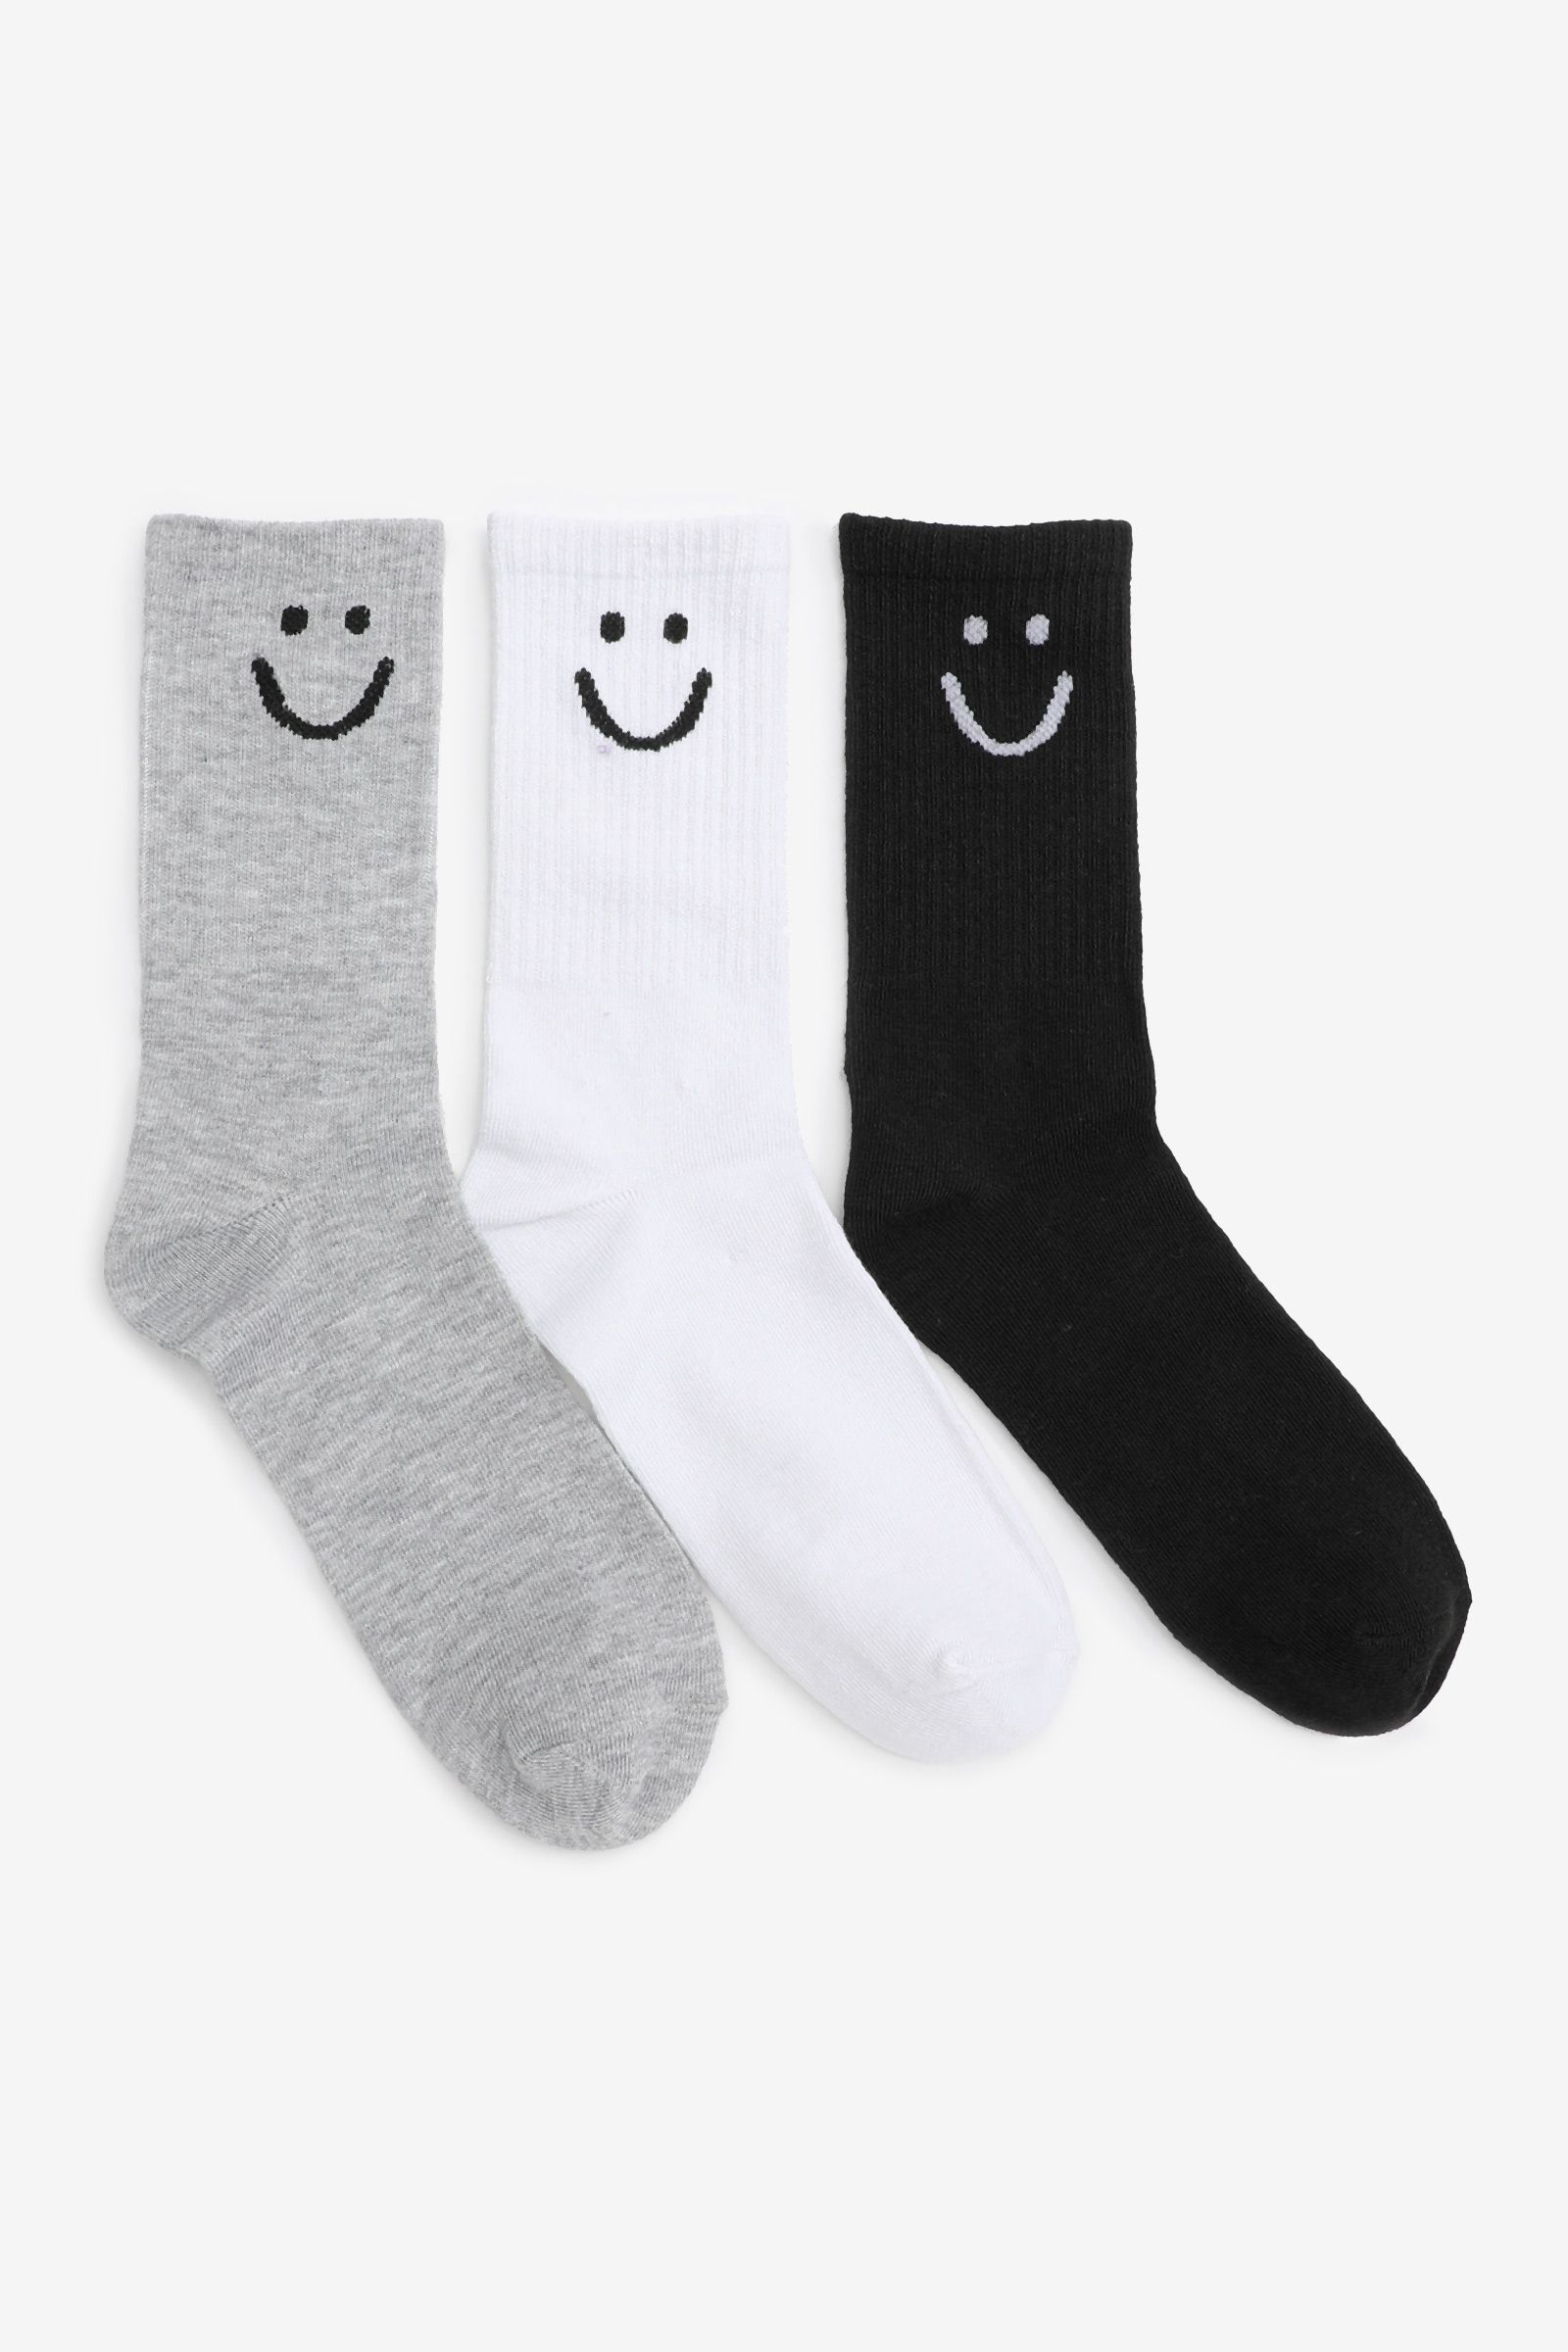 3-Pack of Smiley Face Crew Socks | Ardene